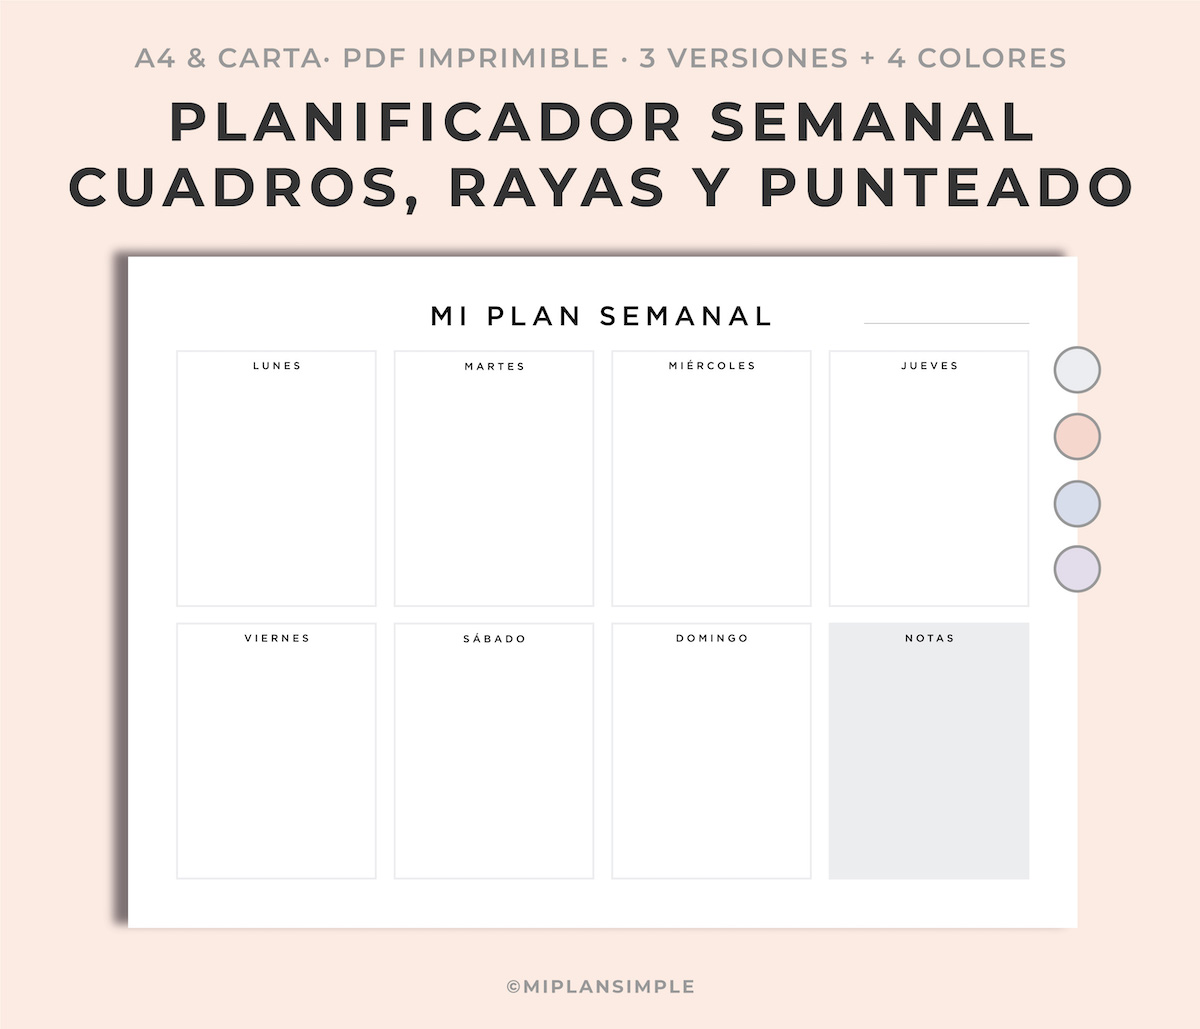 Imprimir En Pdf Gratis Planificador semanal colores PDF para imprimir, Carta y A4, weekly planner  spanish - MIPLANSIMPLE